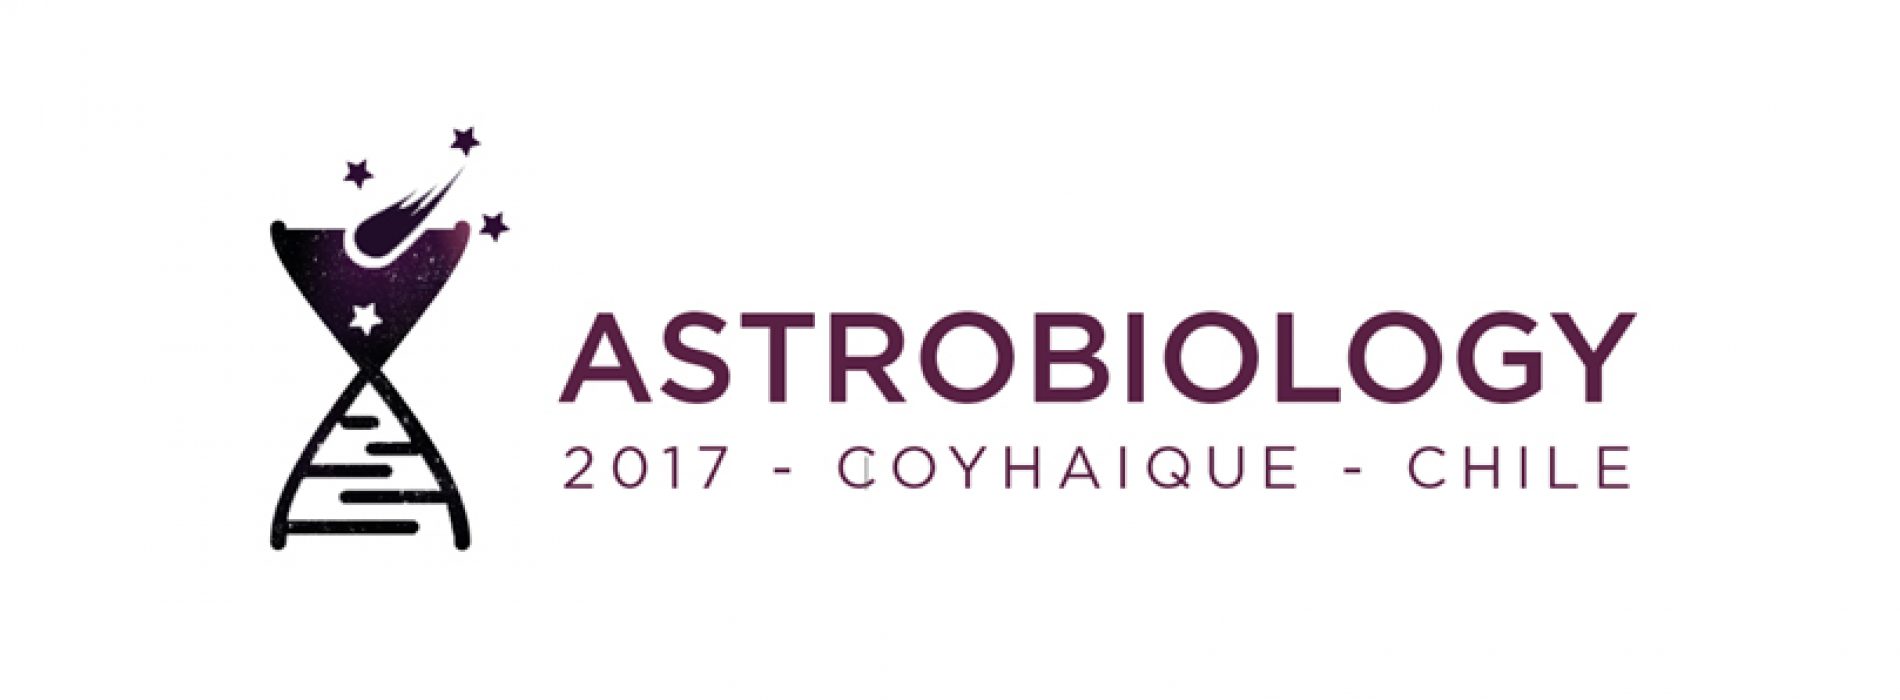 Chile, un laboratorio para entender la vida. Astrobiology 2017